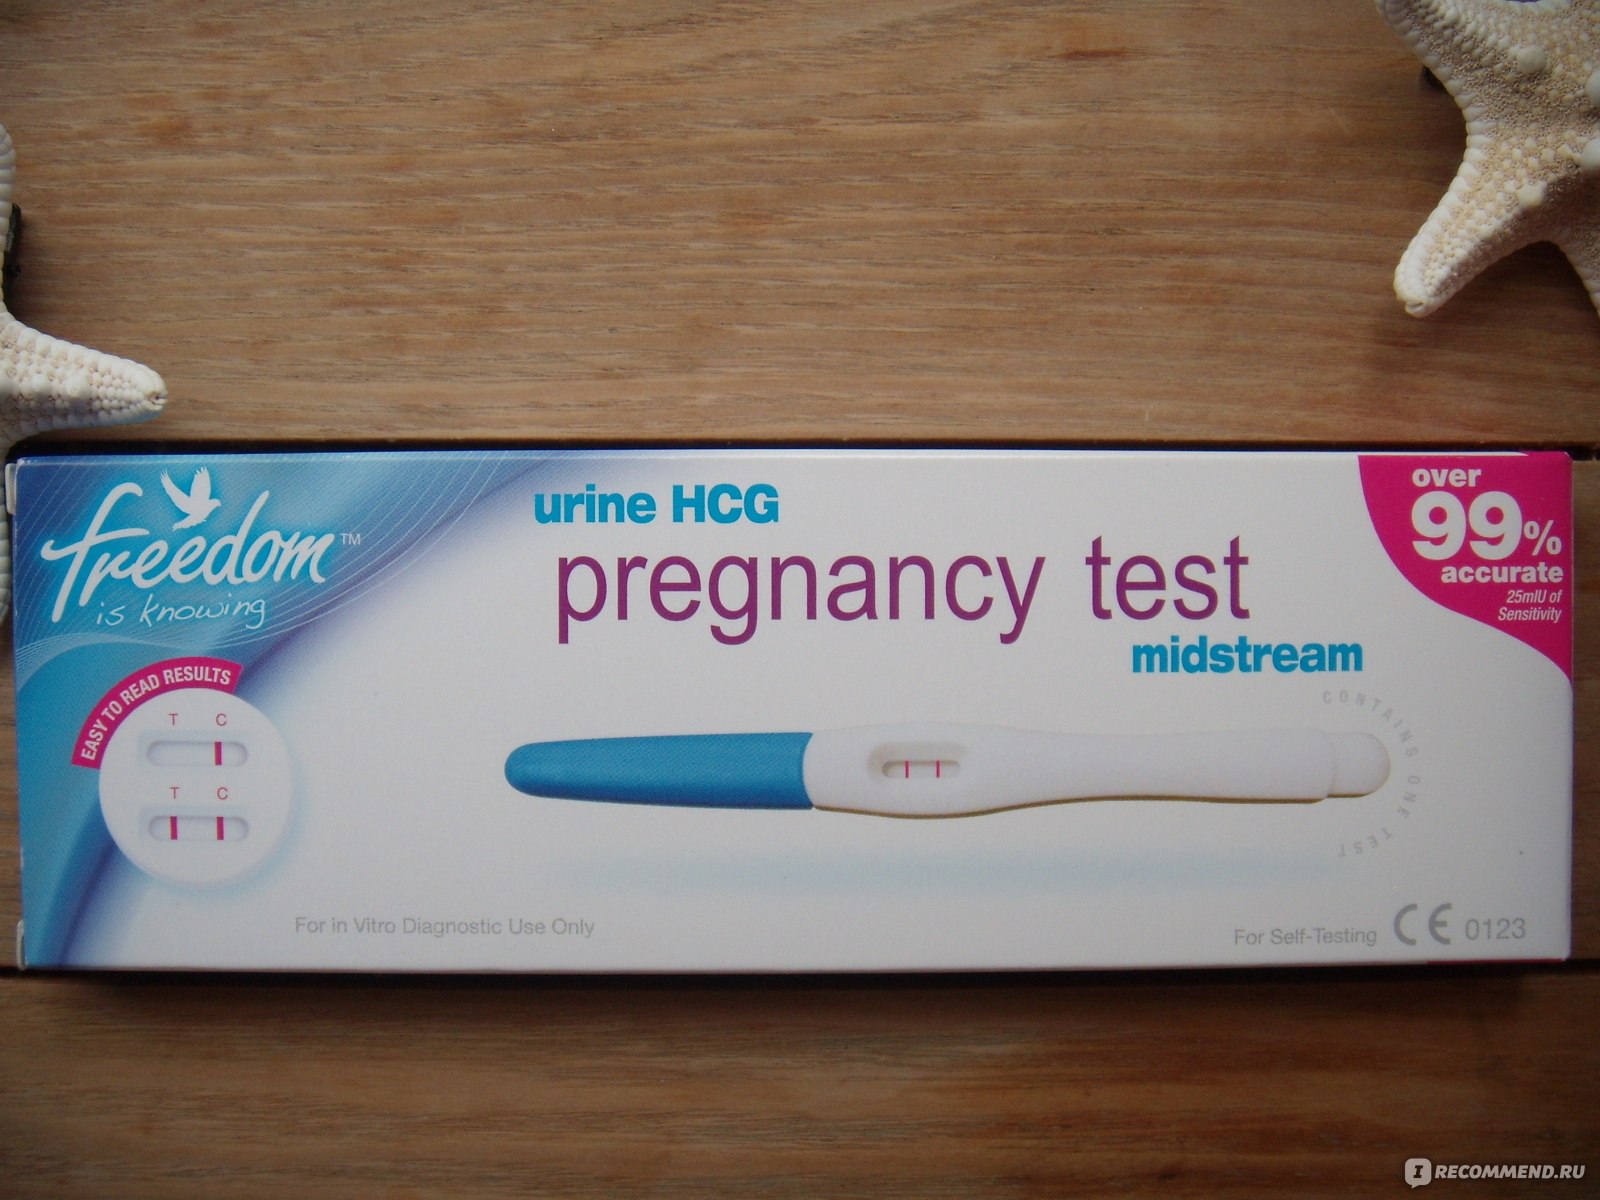 Струйный тест на беременность отзывы. Тест мидстрим на беременность. Тест на беременность HCG Midstream pregnancy Test. Тест мидстрим Midstream на беременность. Тест на беременность Ovie Test струйный.